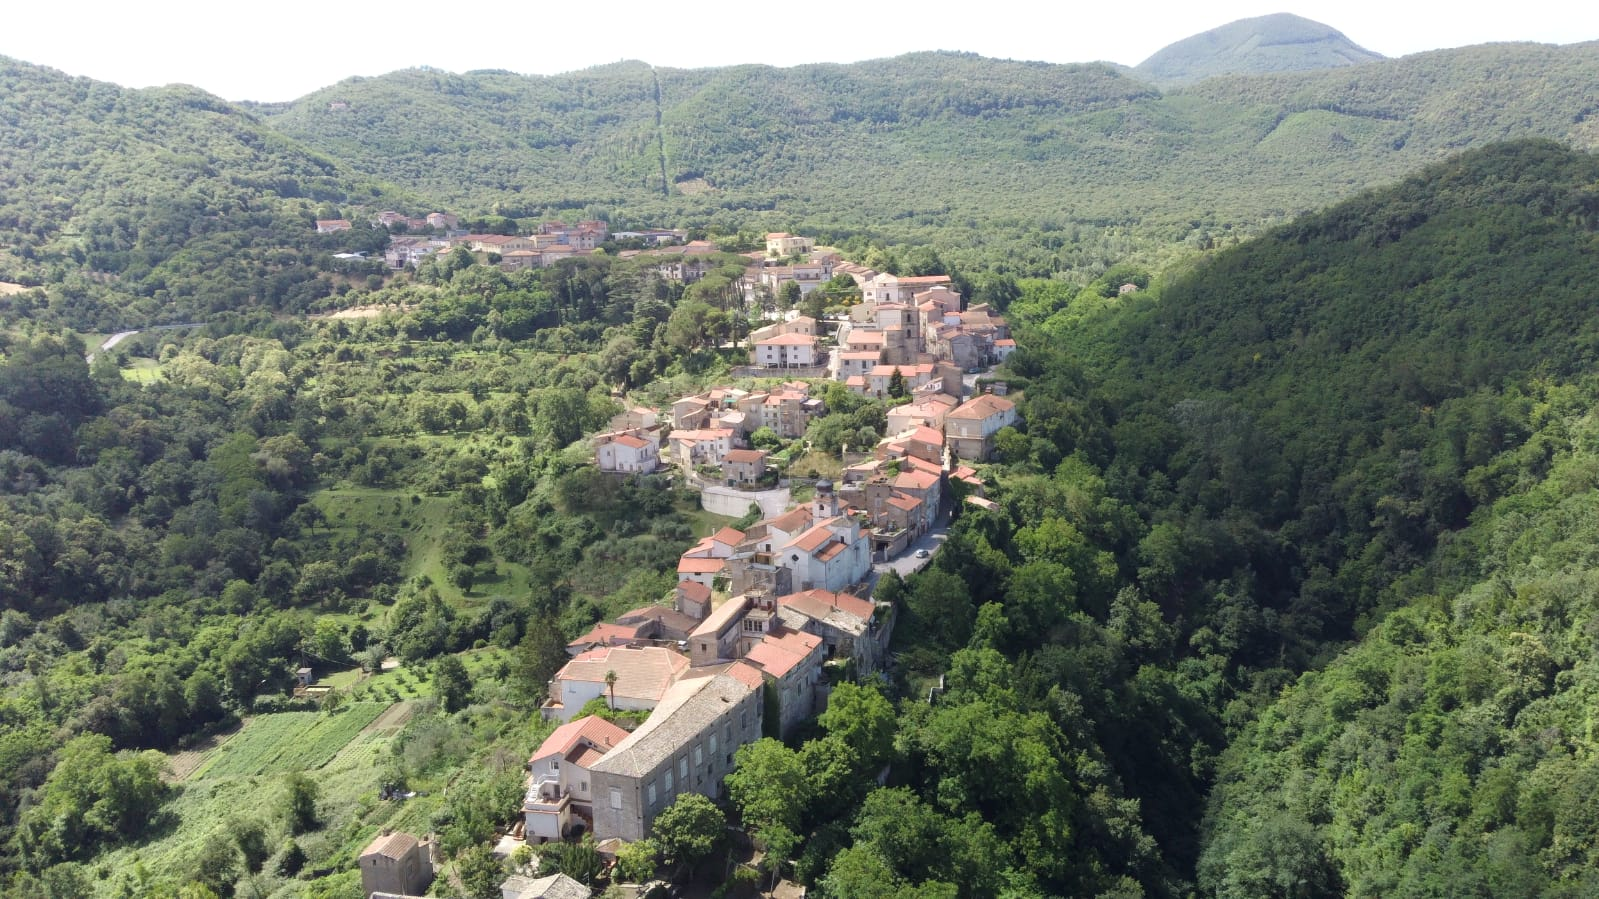 Municipality of Conca della Campania